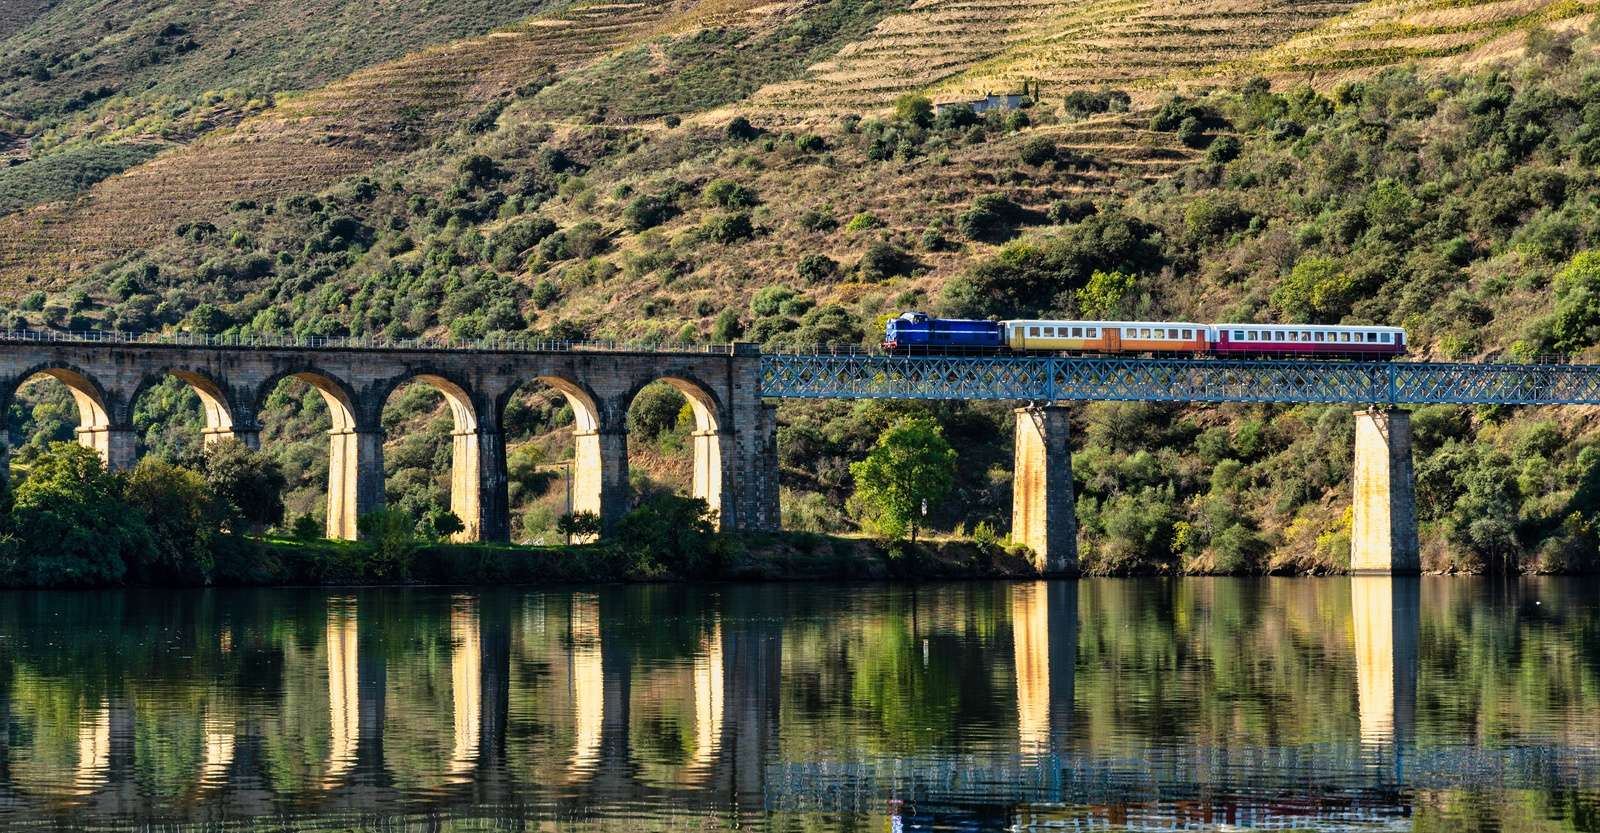 Linha do Douro train, Douro Valley, Portugal.